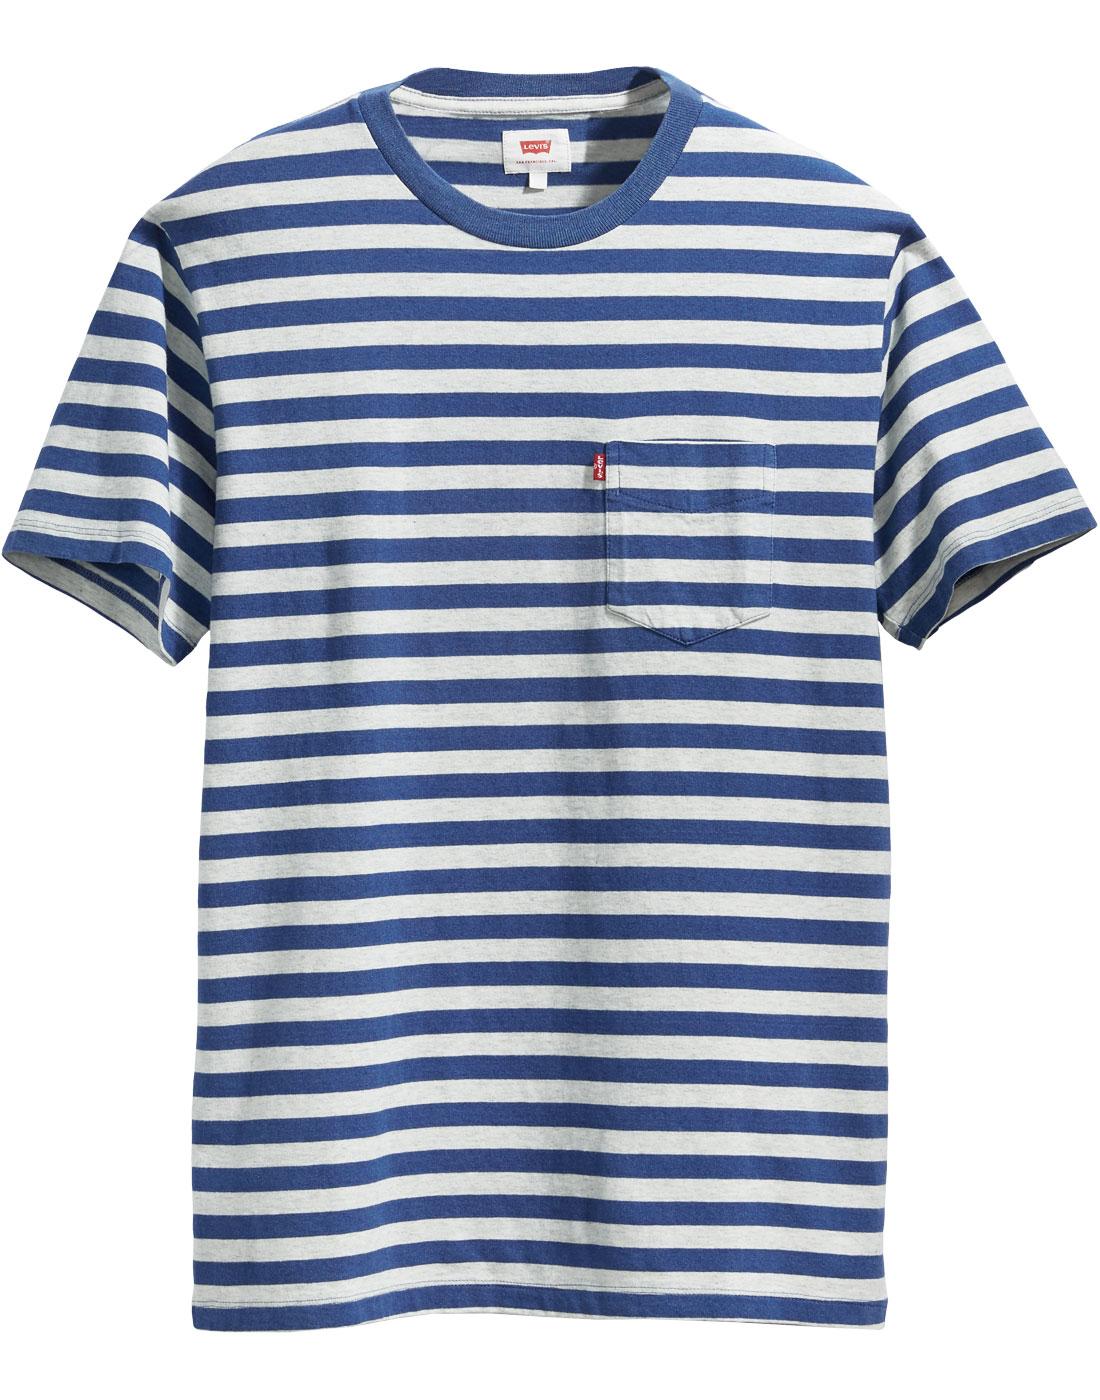 LEVI'S Retro Mod Blue Stripe Sunset Pocket T-shirt